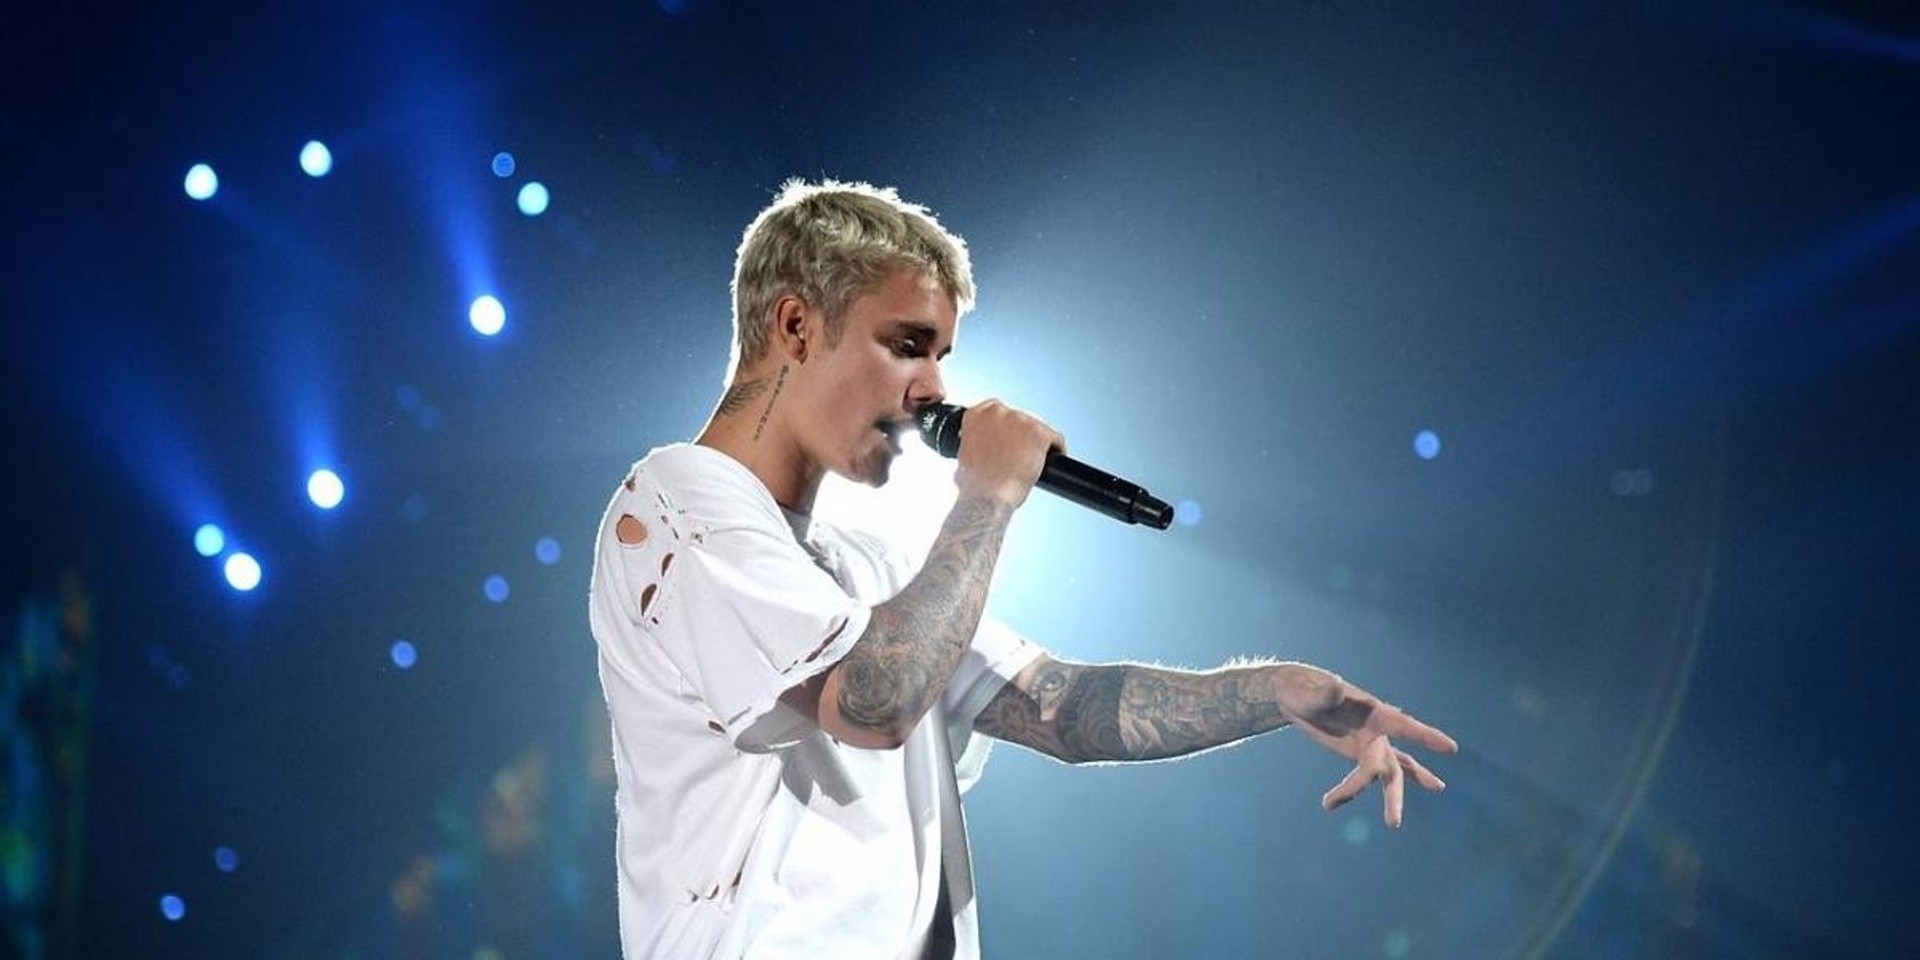 Justin Bieber to bring Purpose Tour to Manila this year